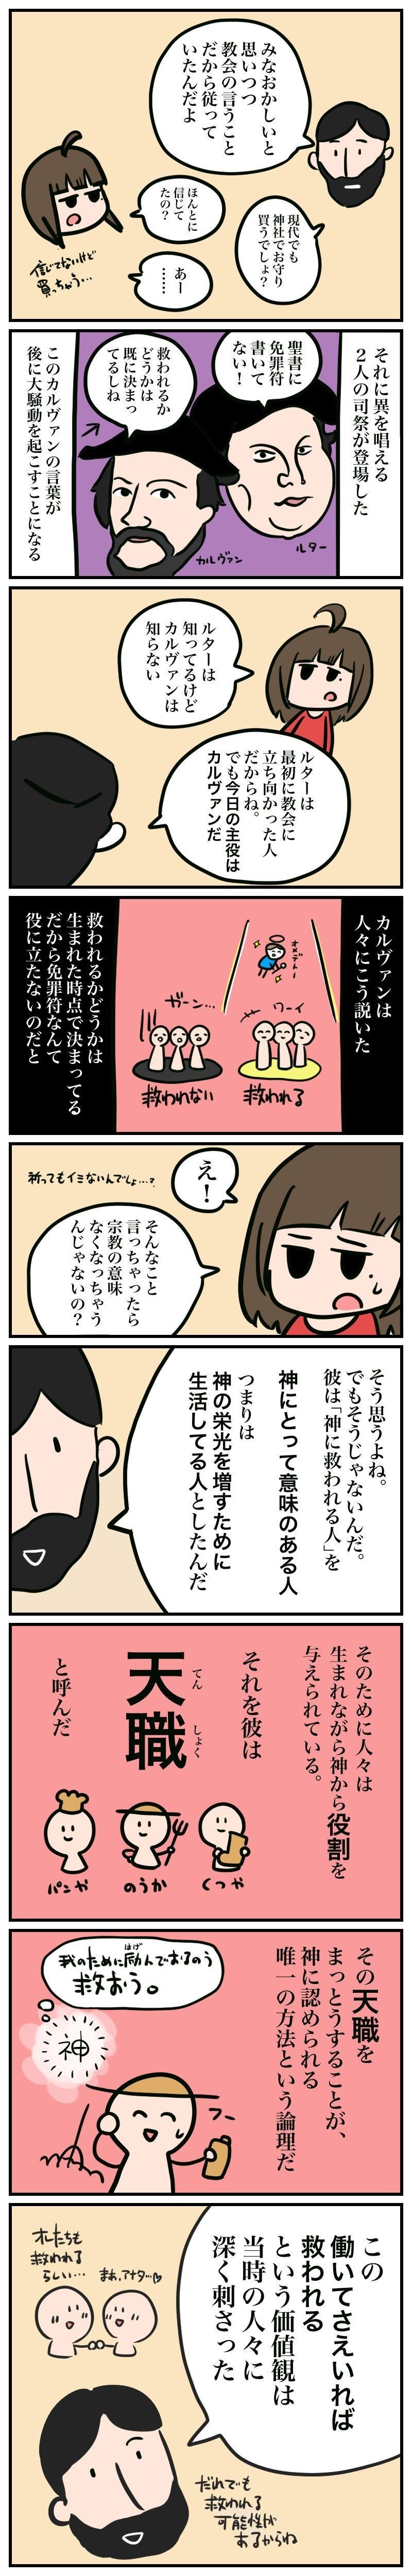 がんばれイデアちゃん1-2